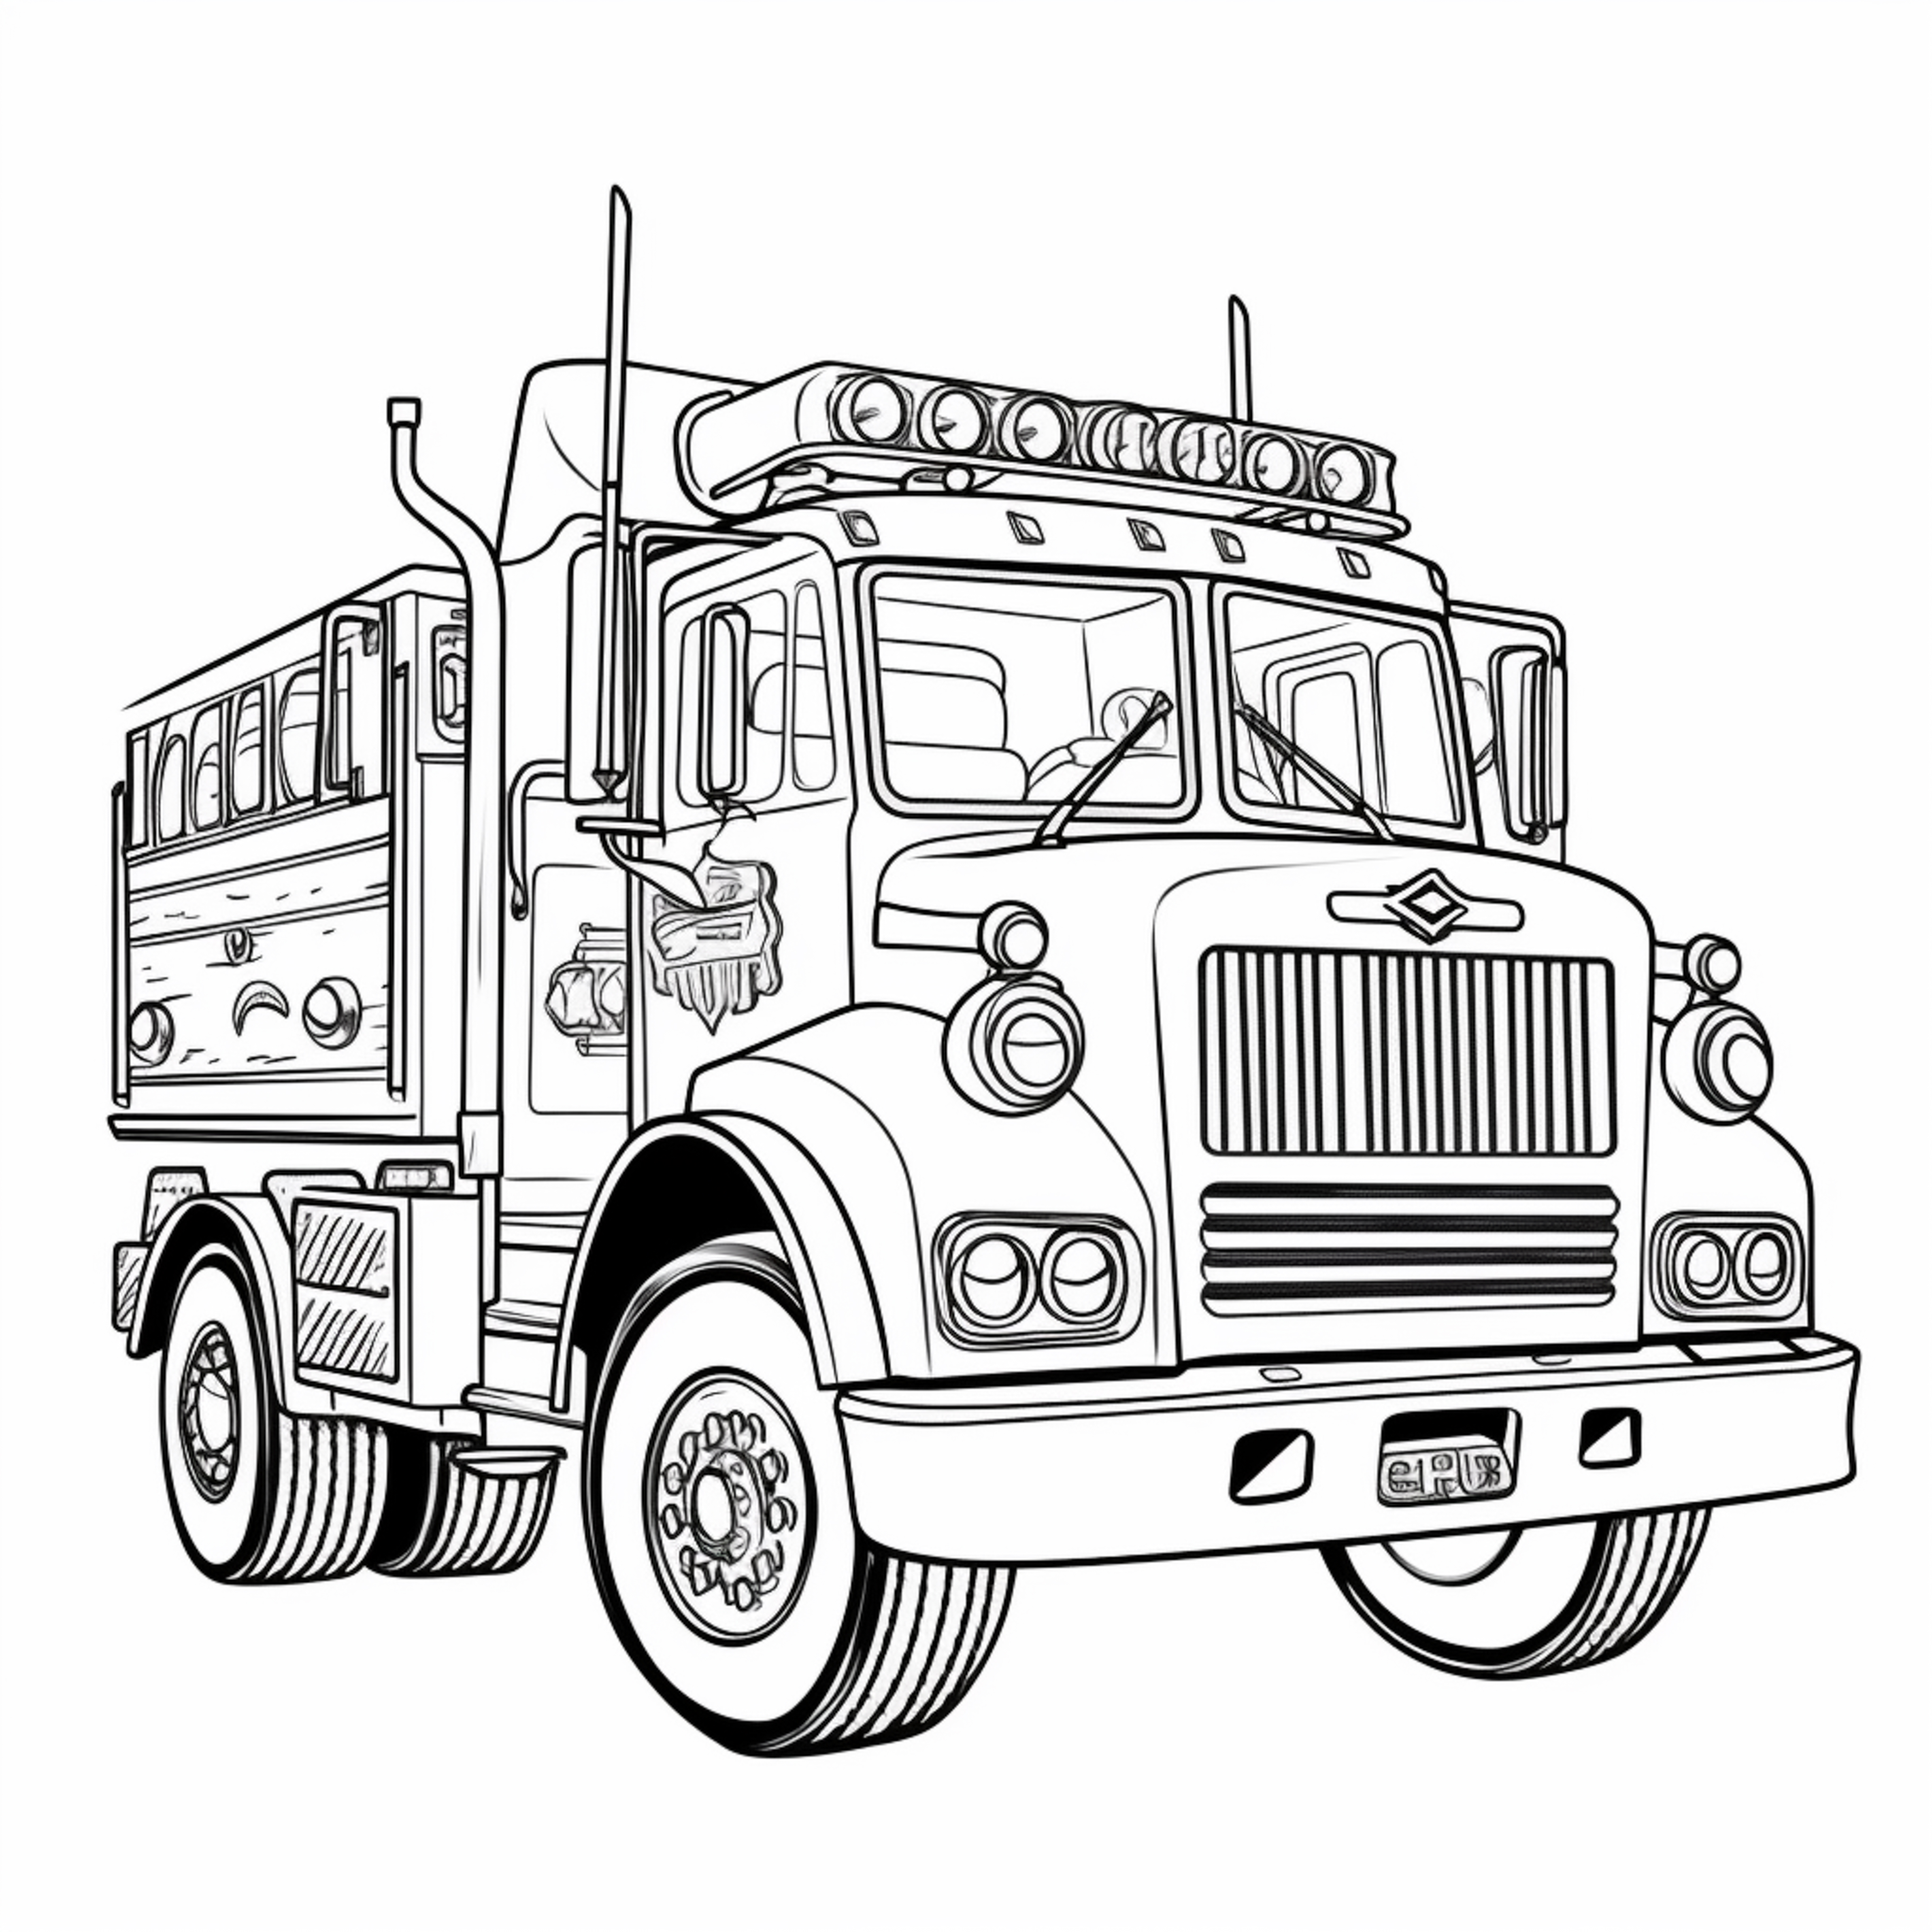 Раскраска большая пожарная машина с мигалками формата А4 в высоком качестве